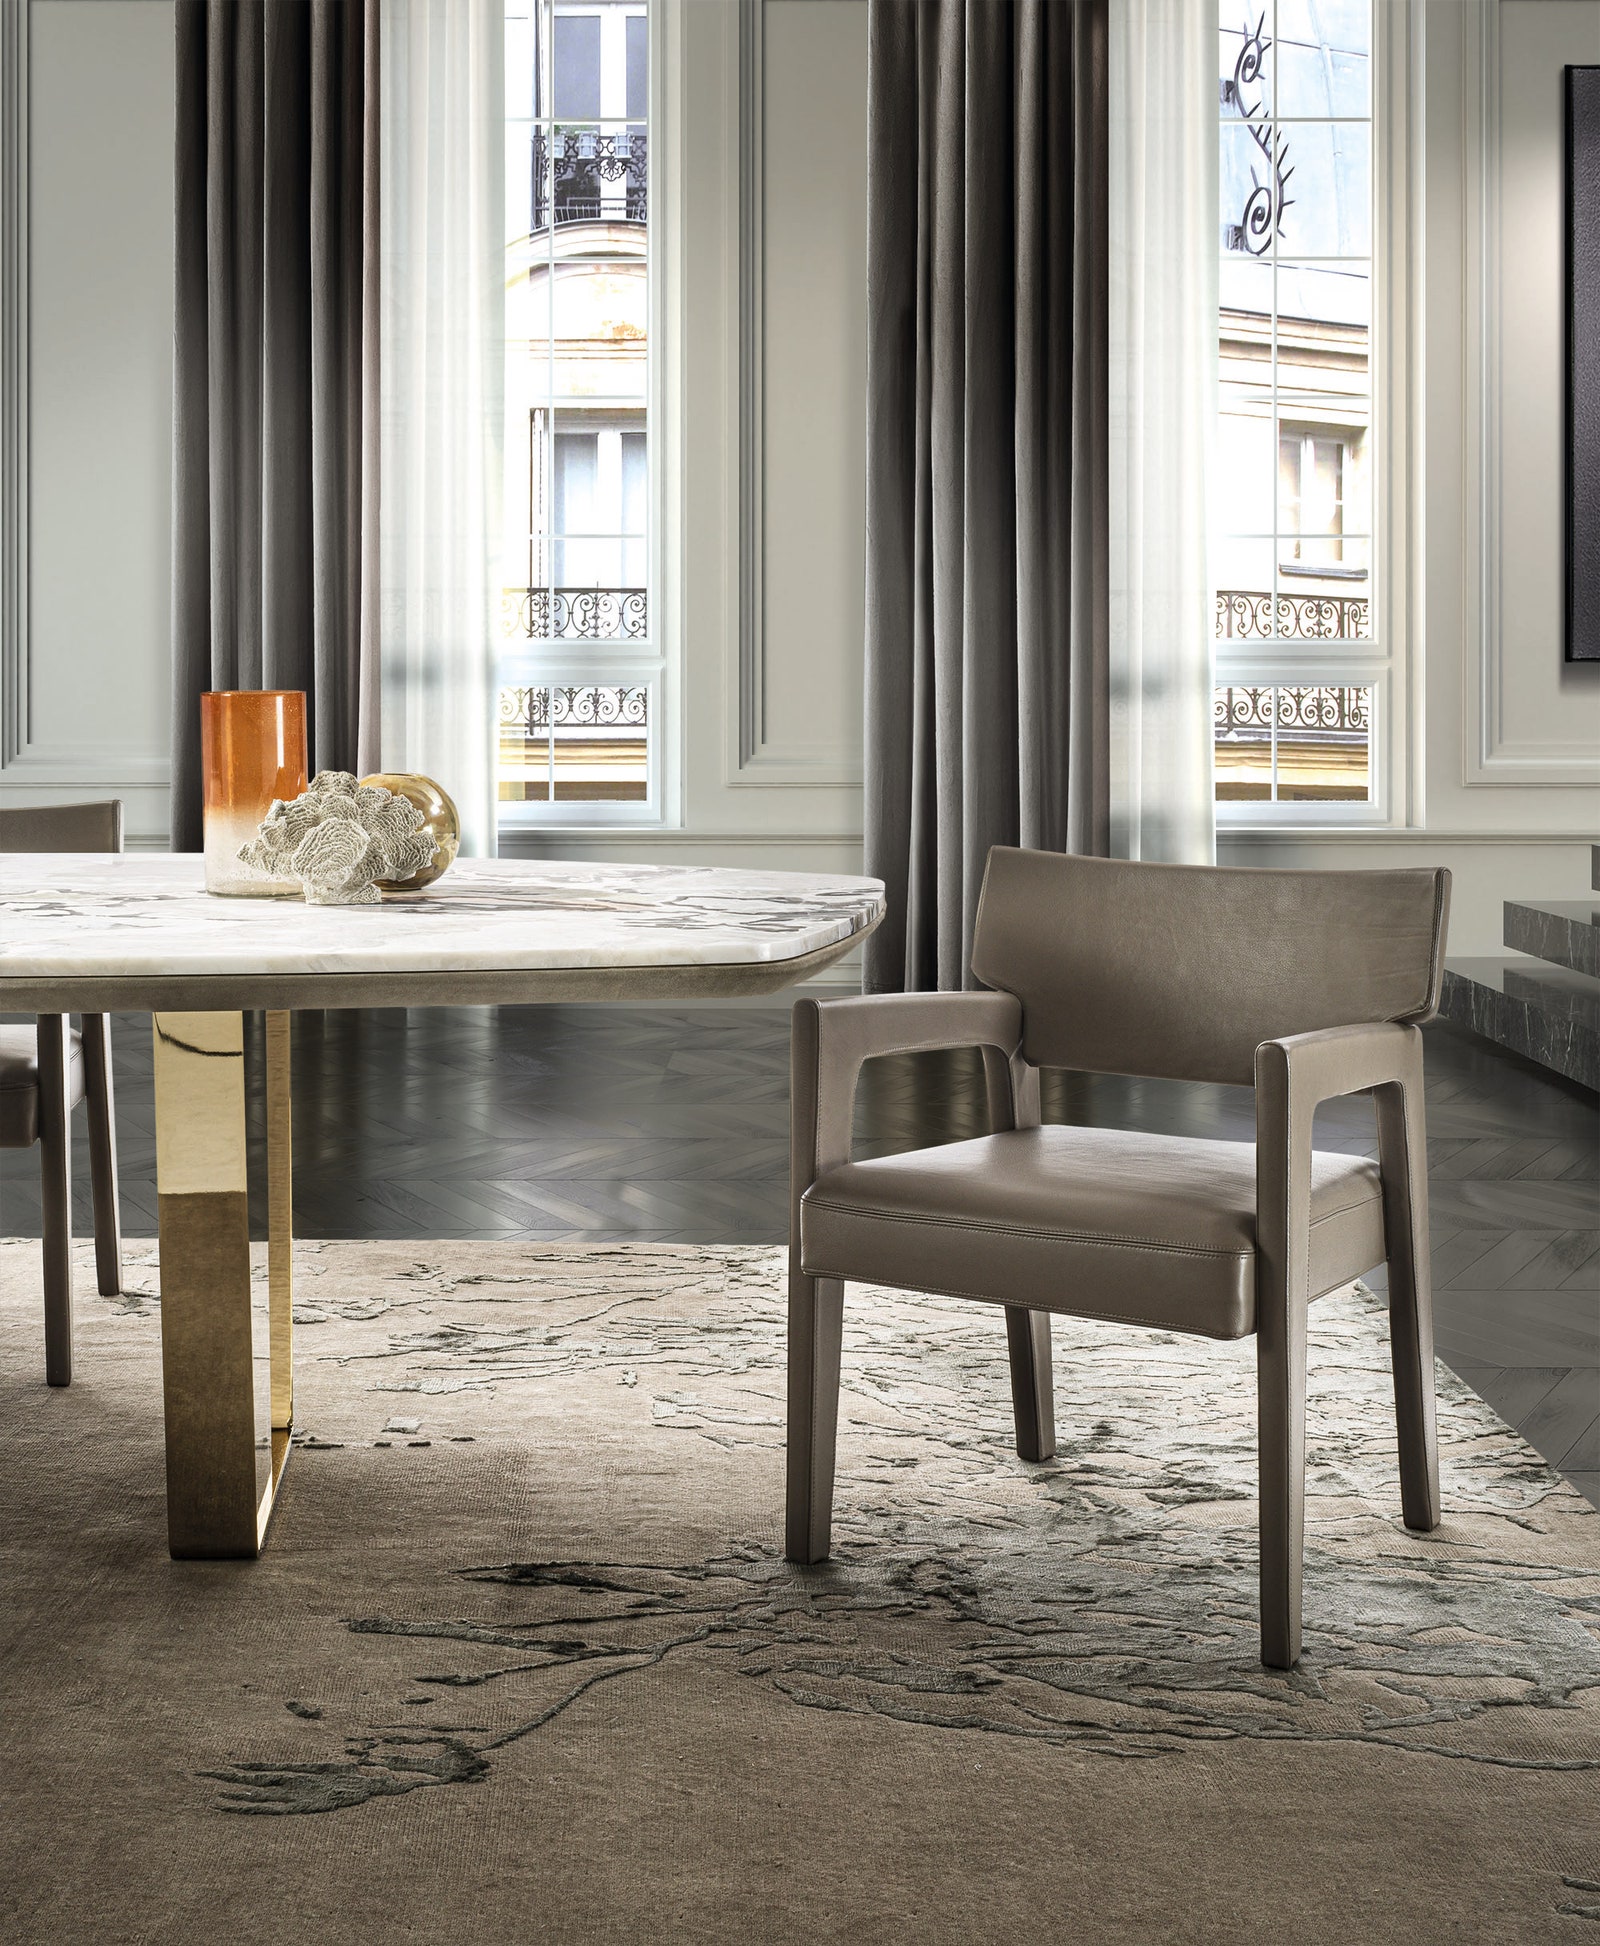 Новый люкс поитальянски мебель для ценителей элегантных интерьеров